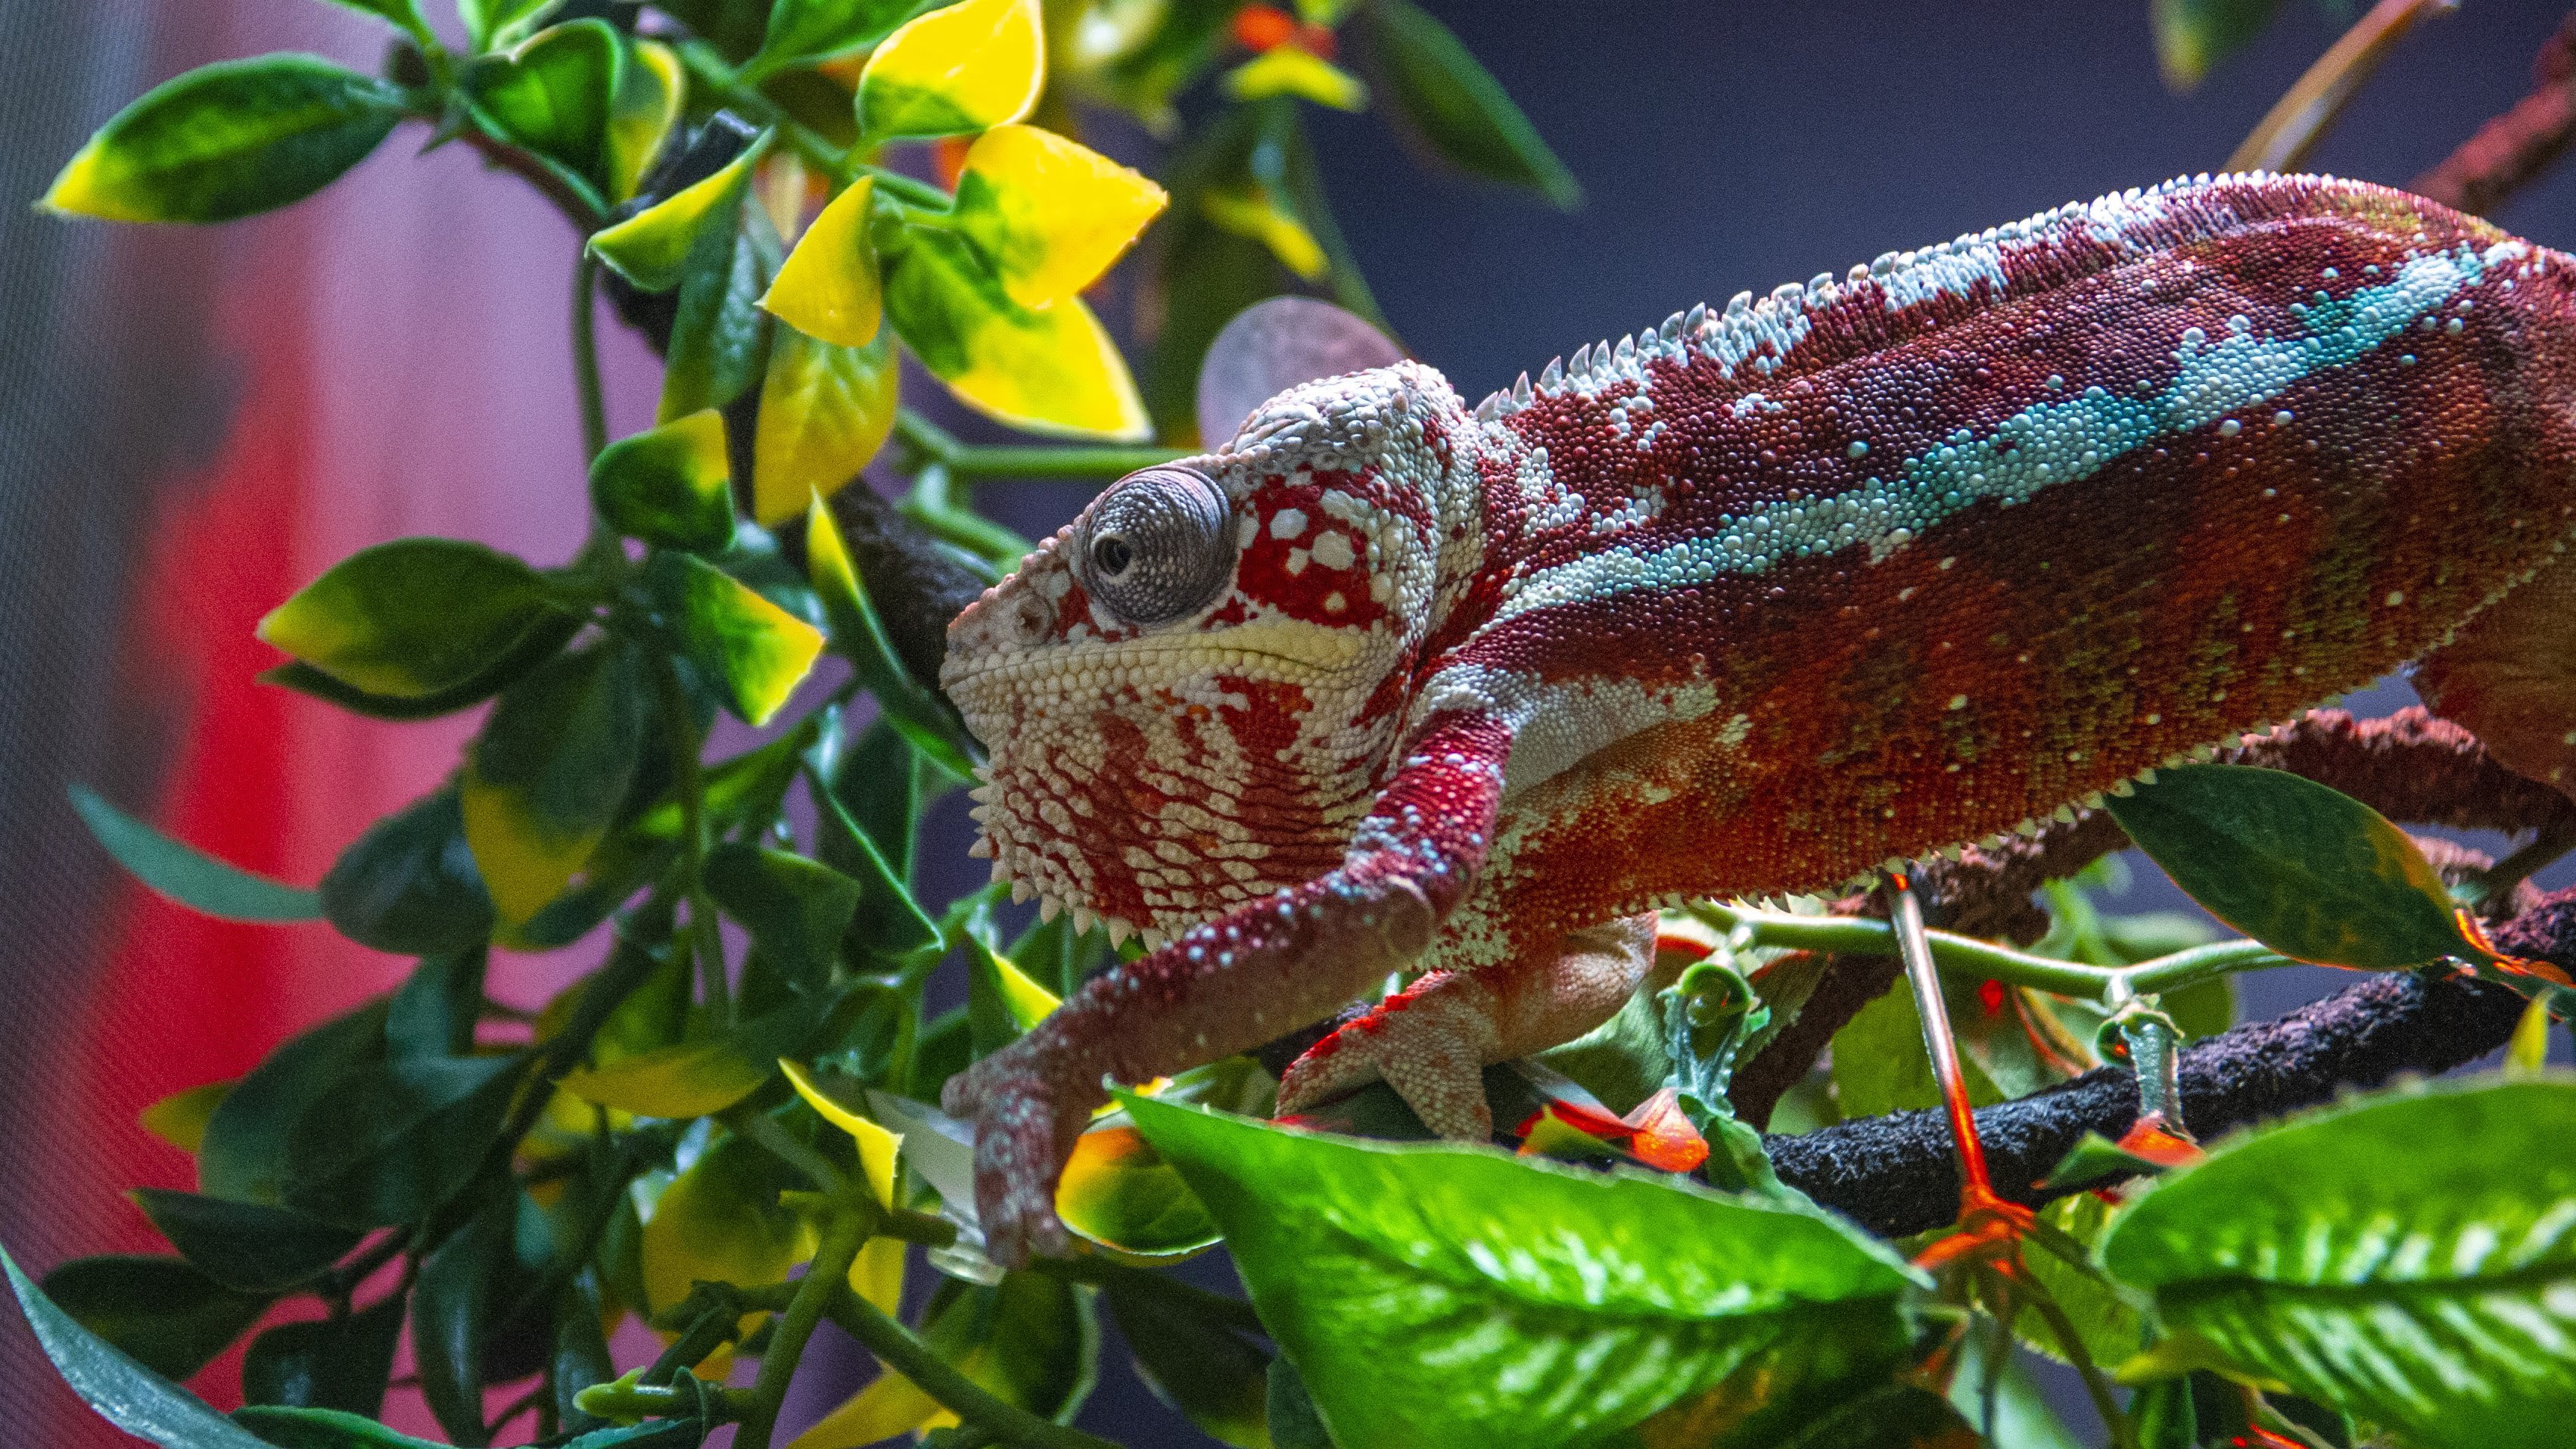 Beautiful Footage: Chameleons Are Amazing